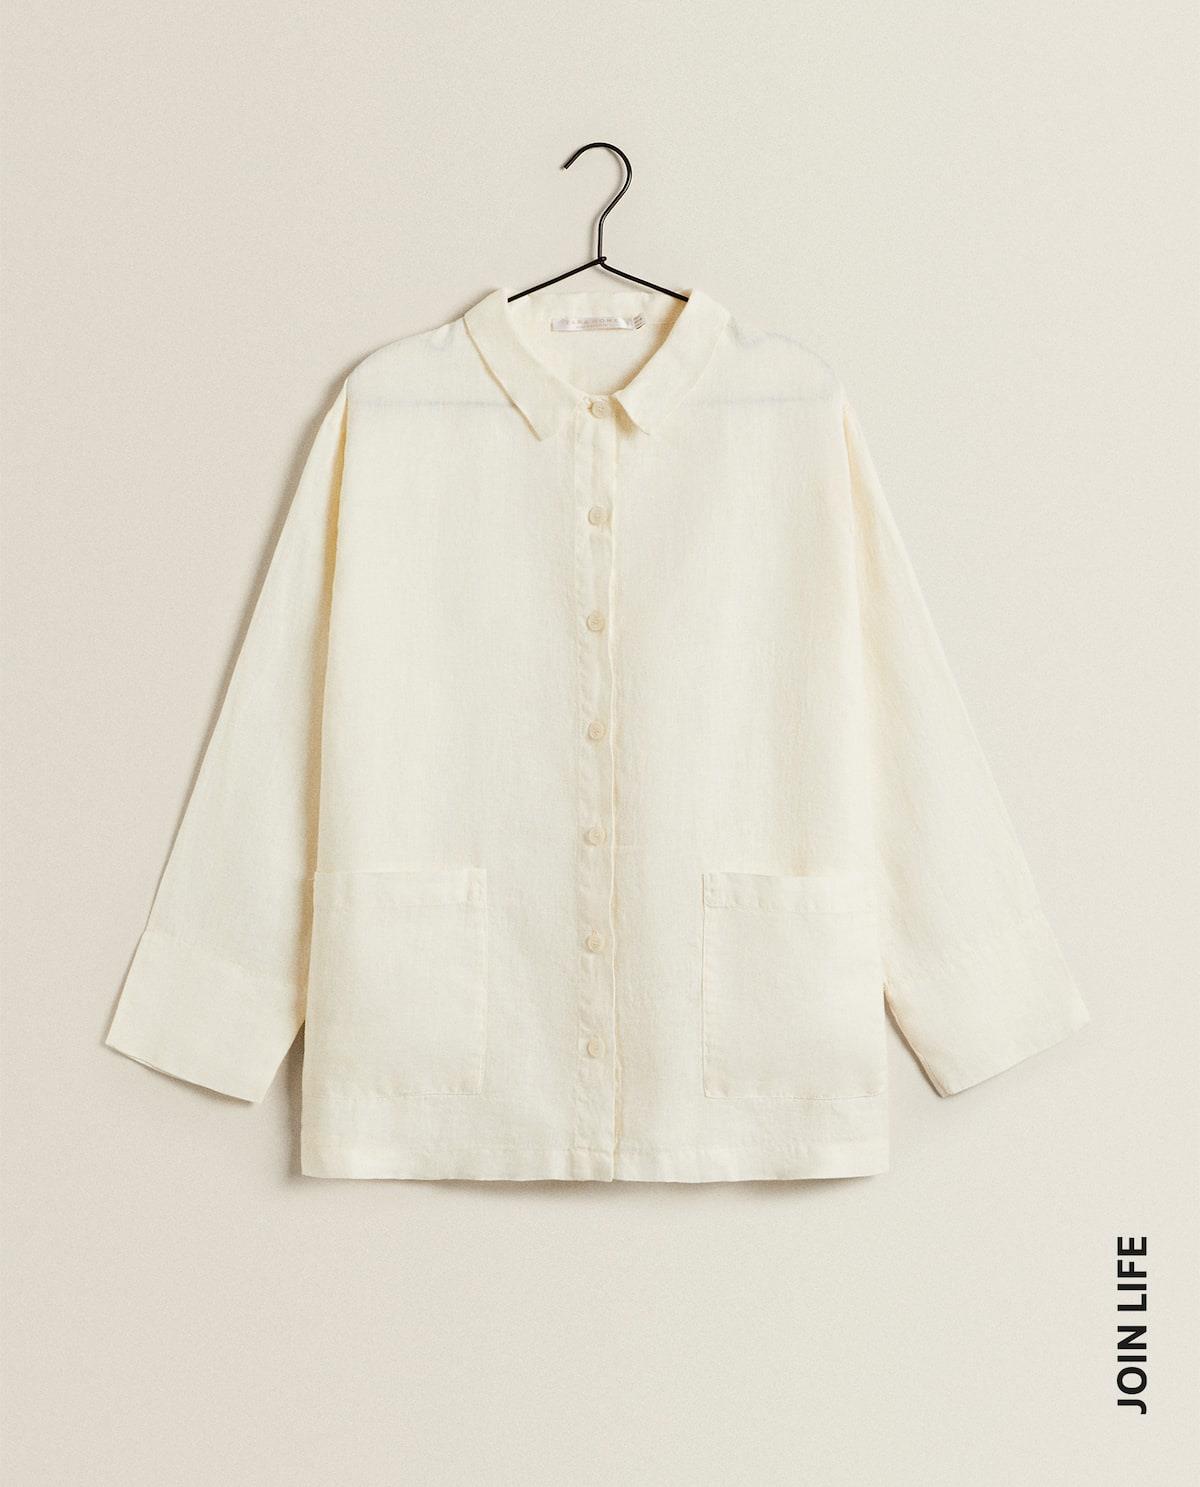 Camisa de lino con bolsillos, Zara Home